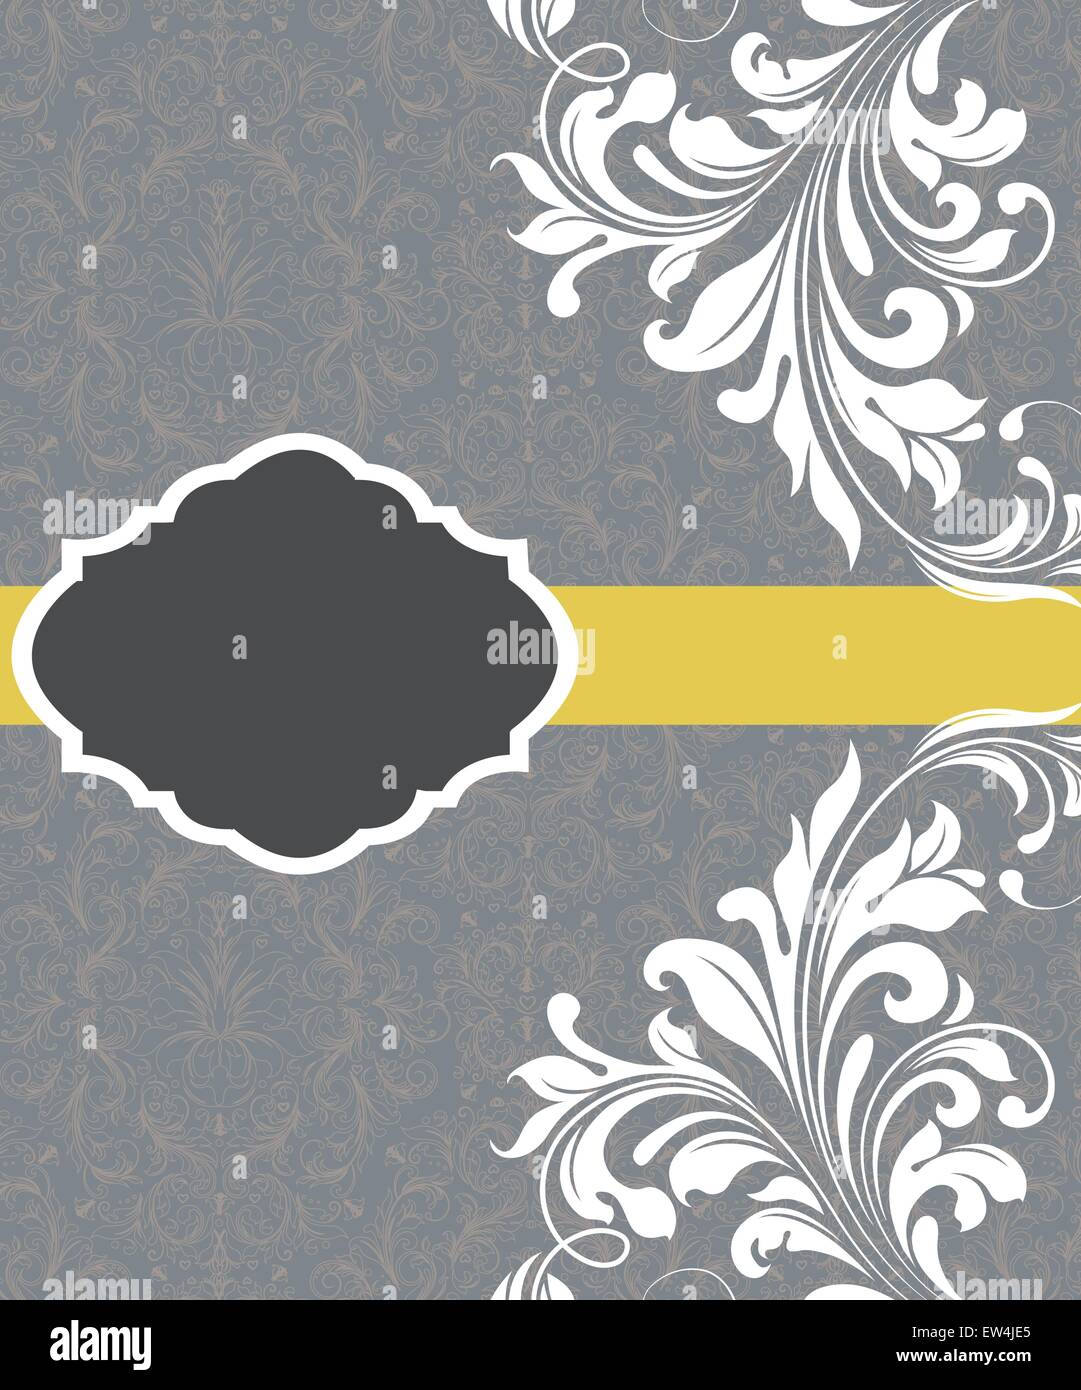 Tarjeta de invitación Vintage adornado con elegante diseño floral abstracto, flores blancas sobre fondo gris azulado con cinta amarilla. Ilustración del Vector